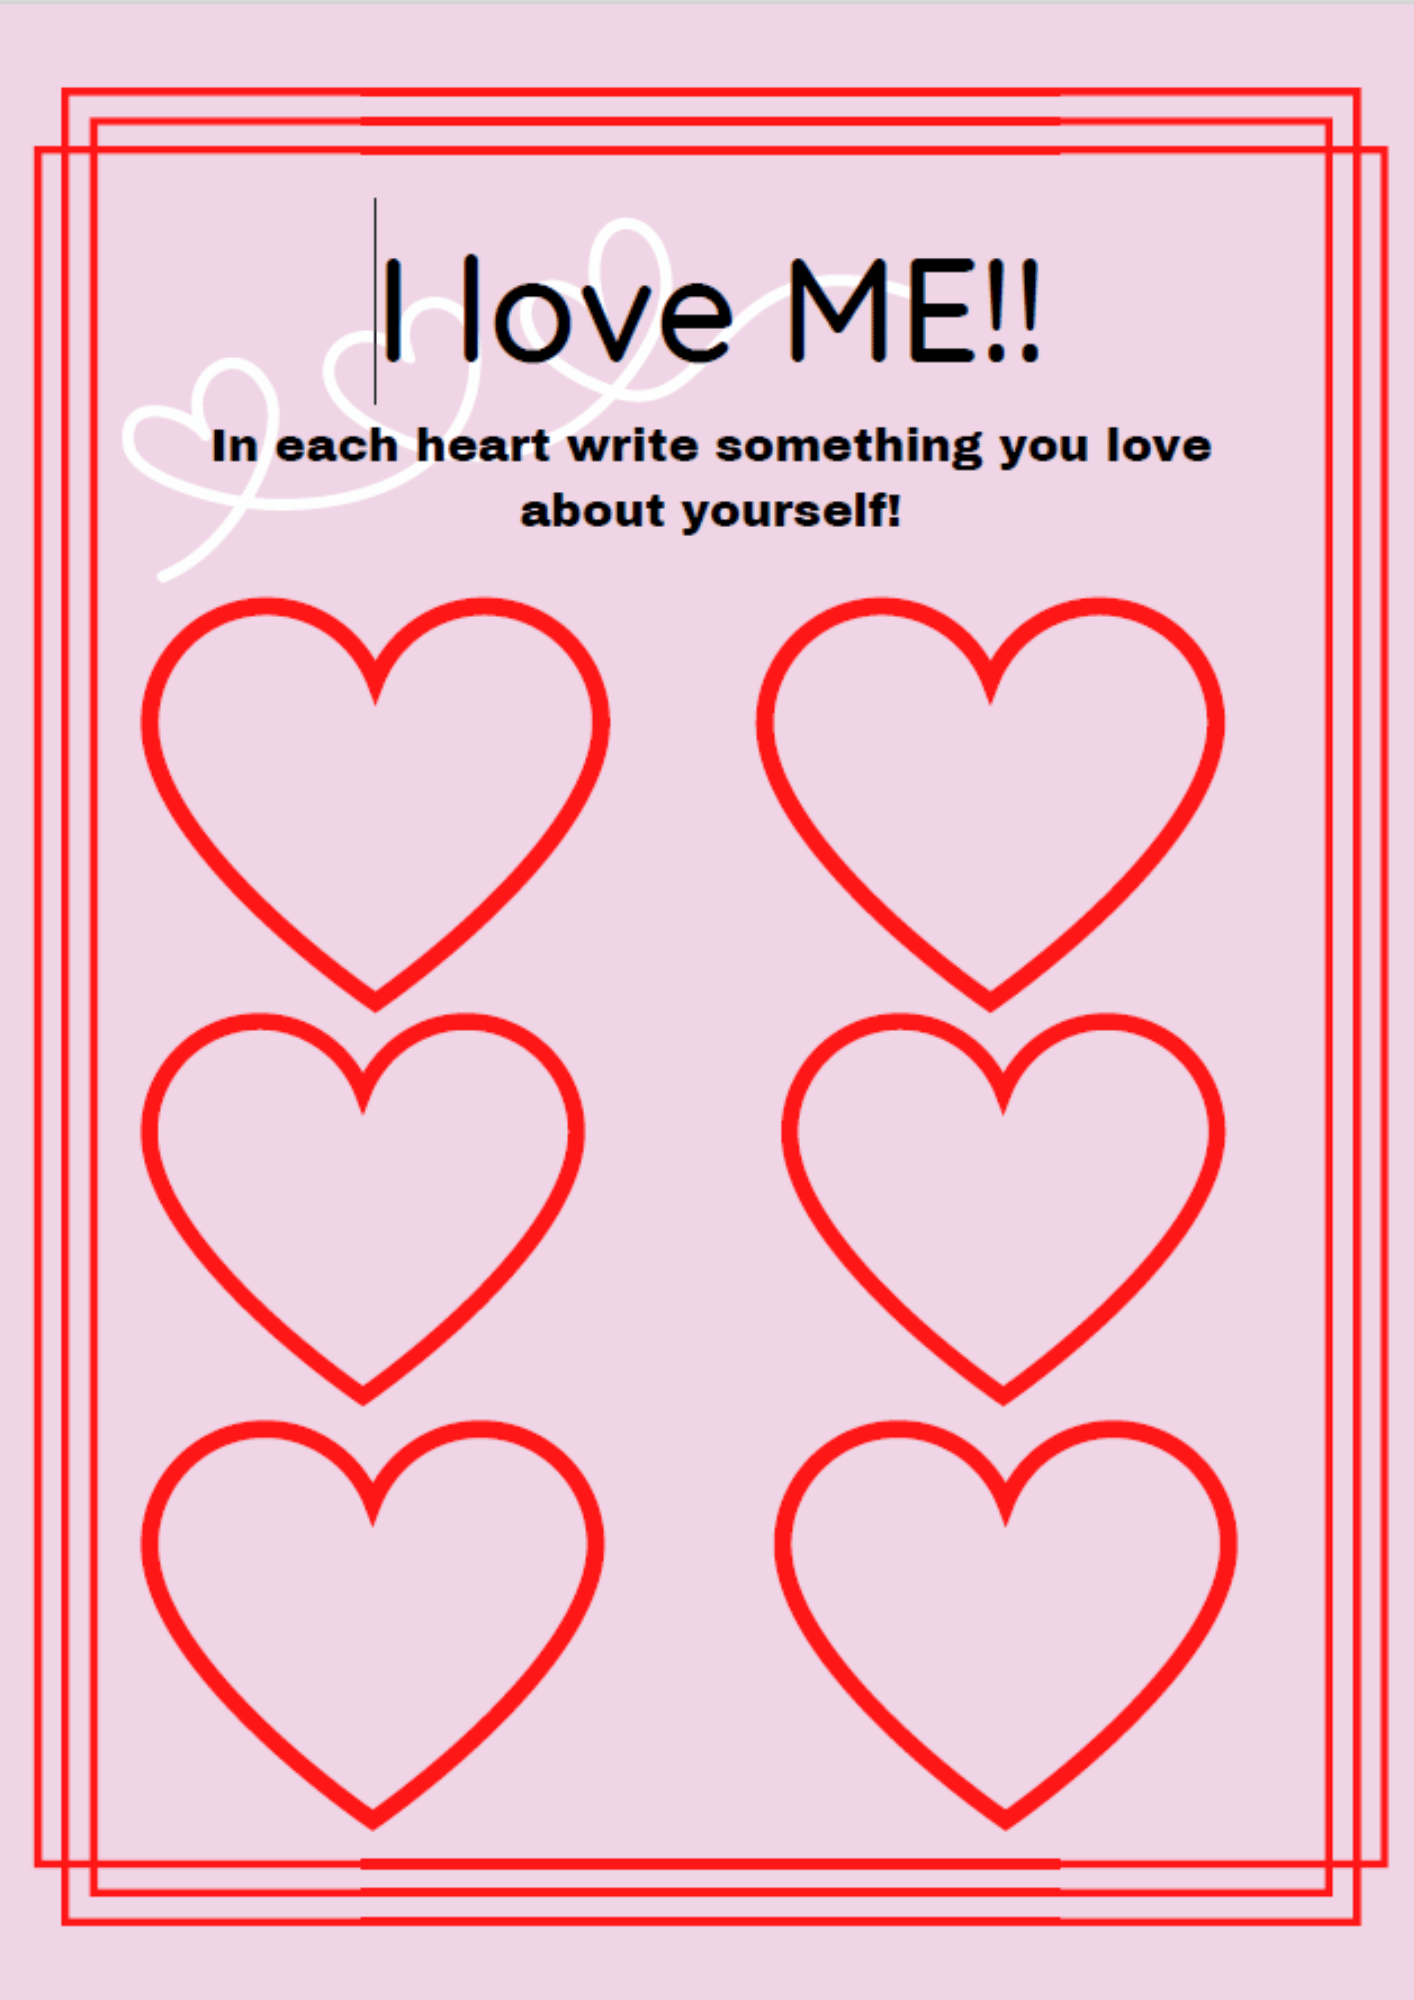 Self-love worksheet